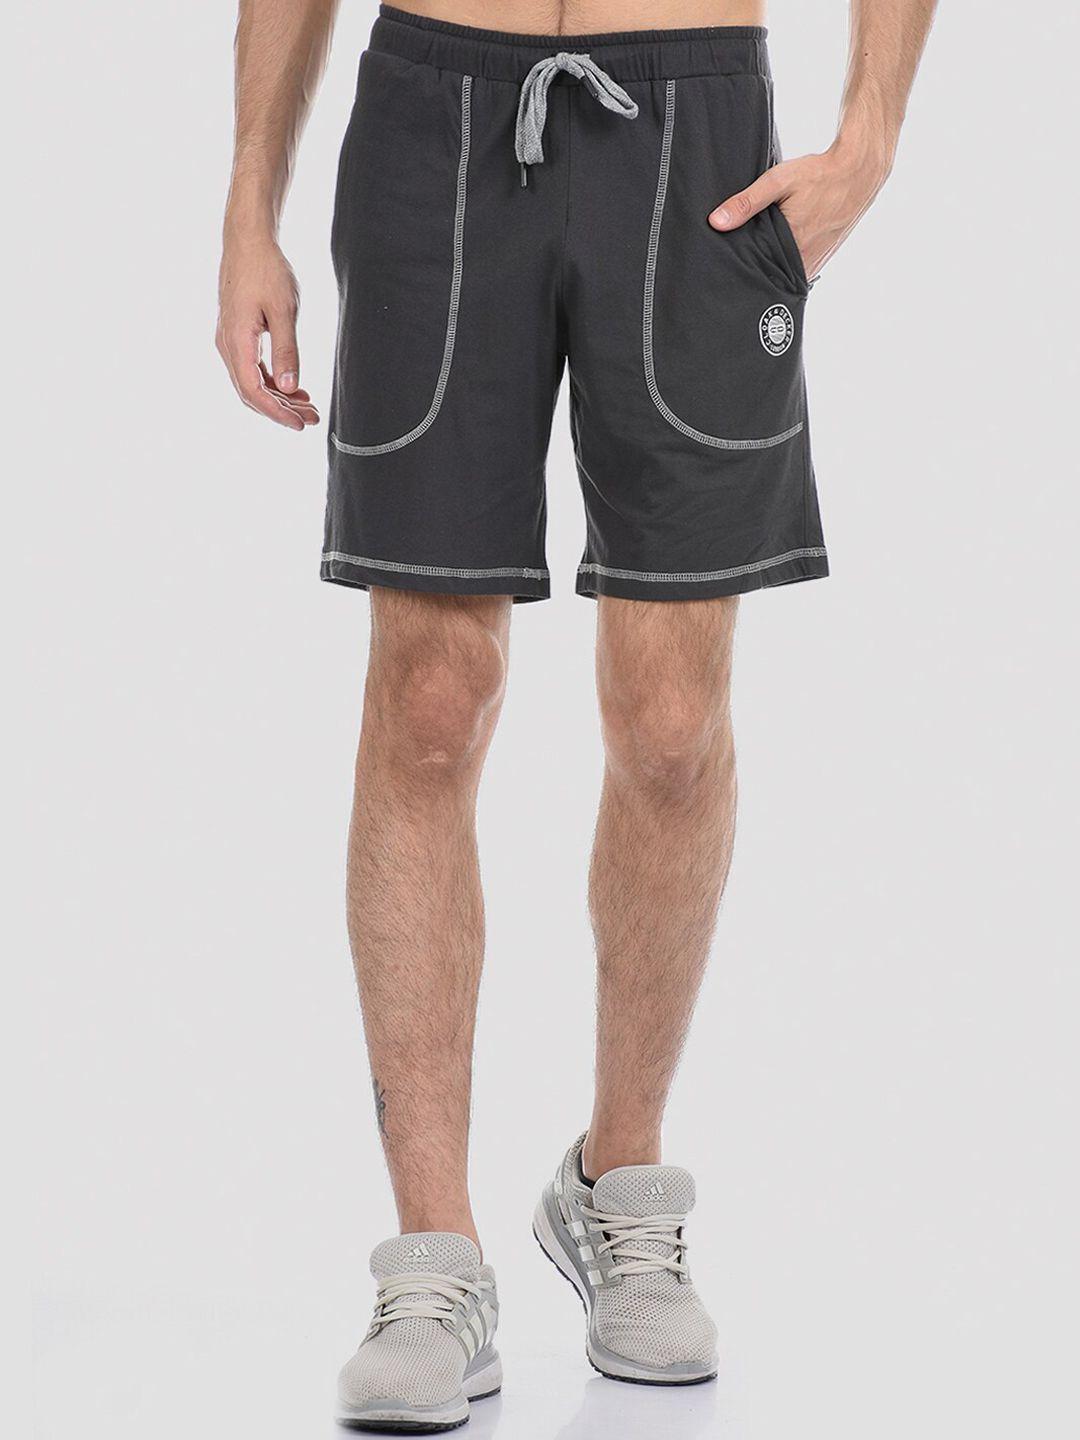 cloak & decker by monte carlo men grey melange sports shorts